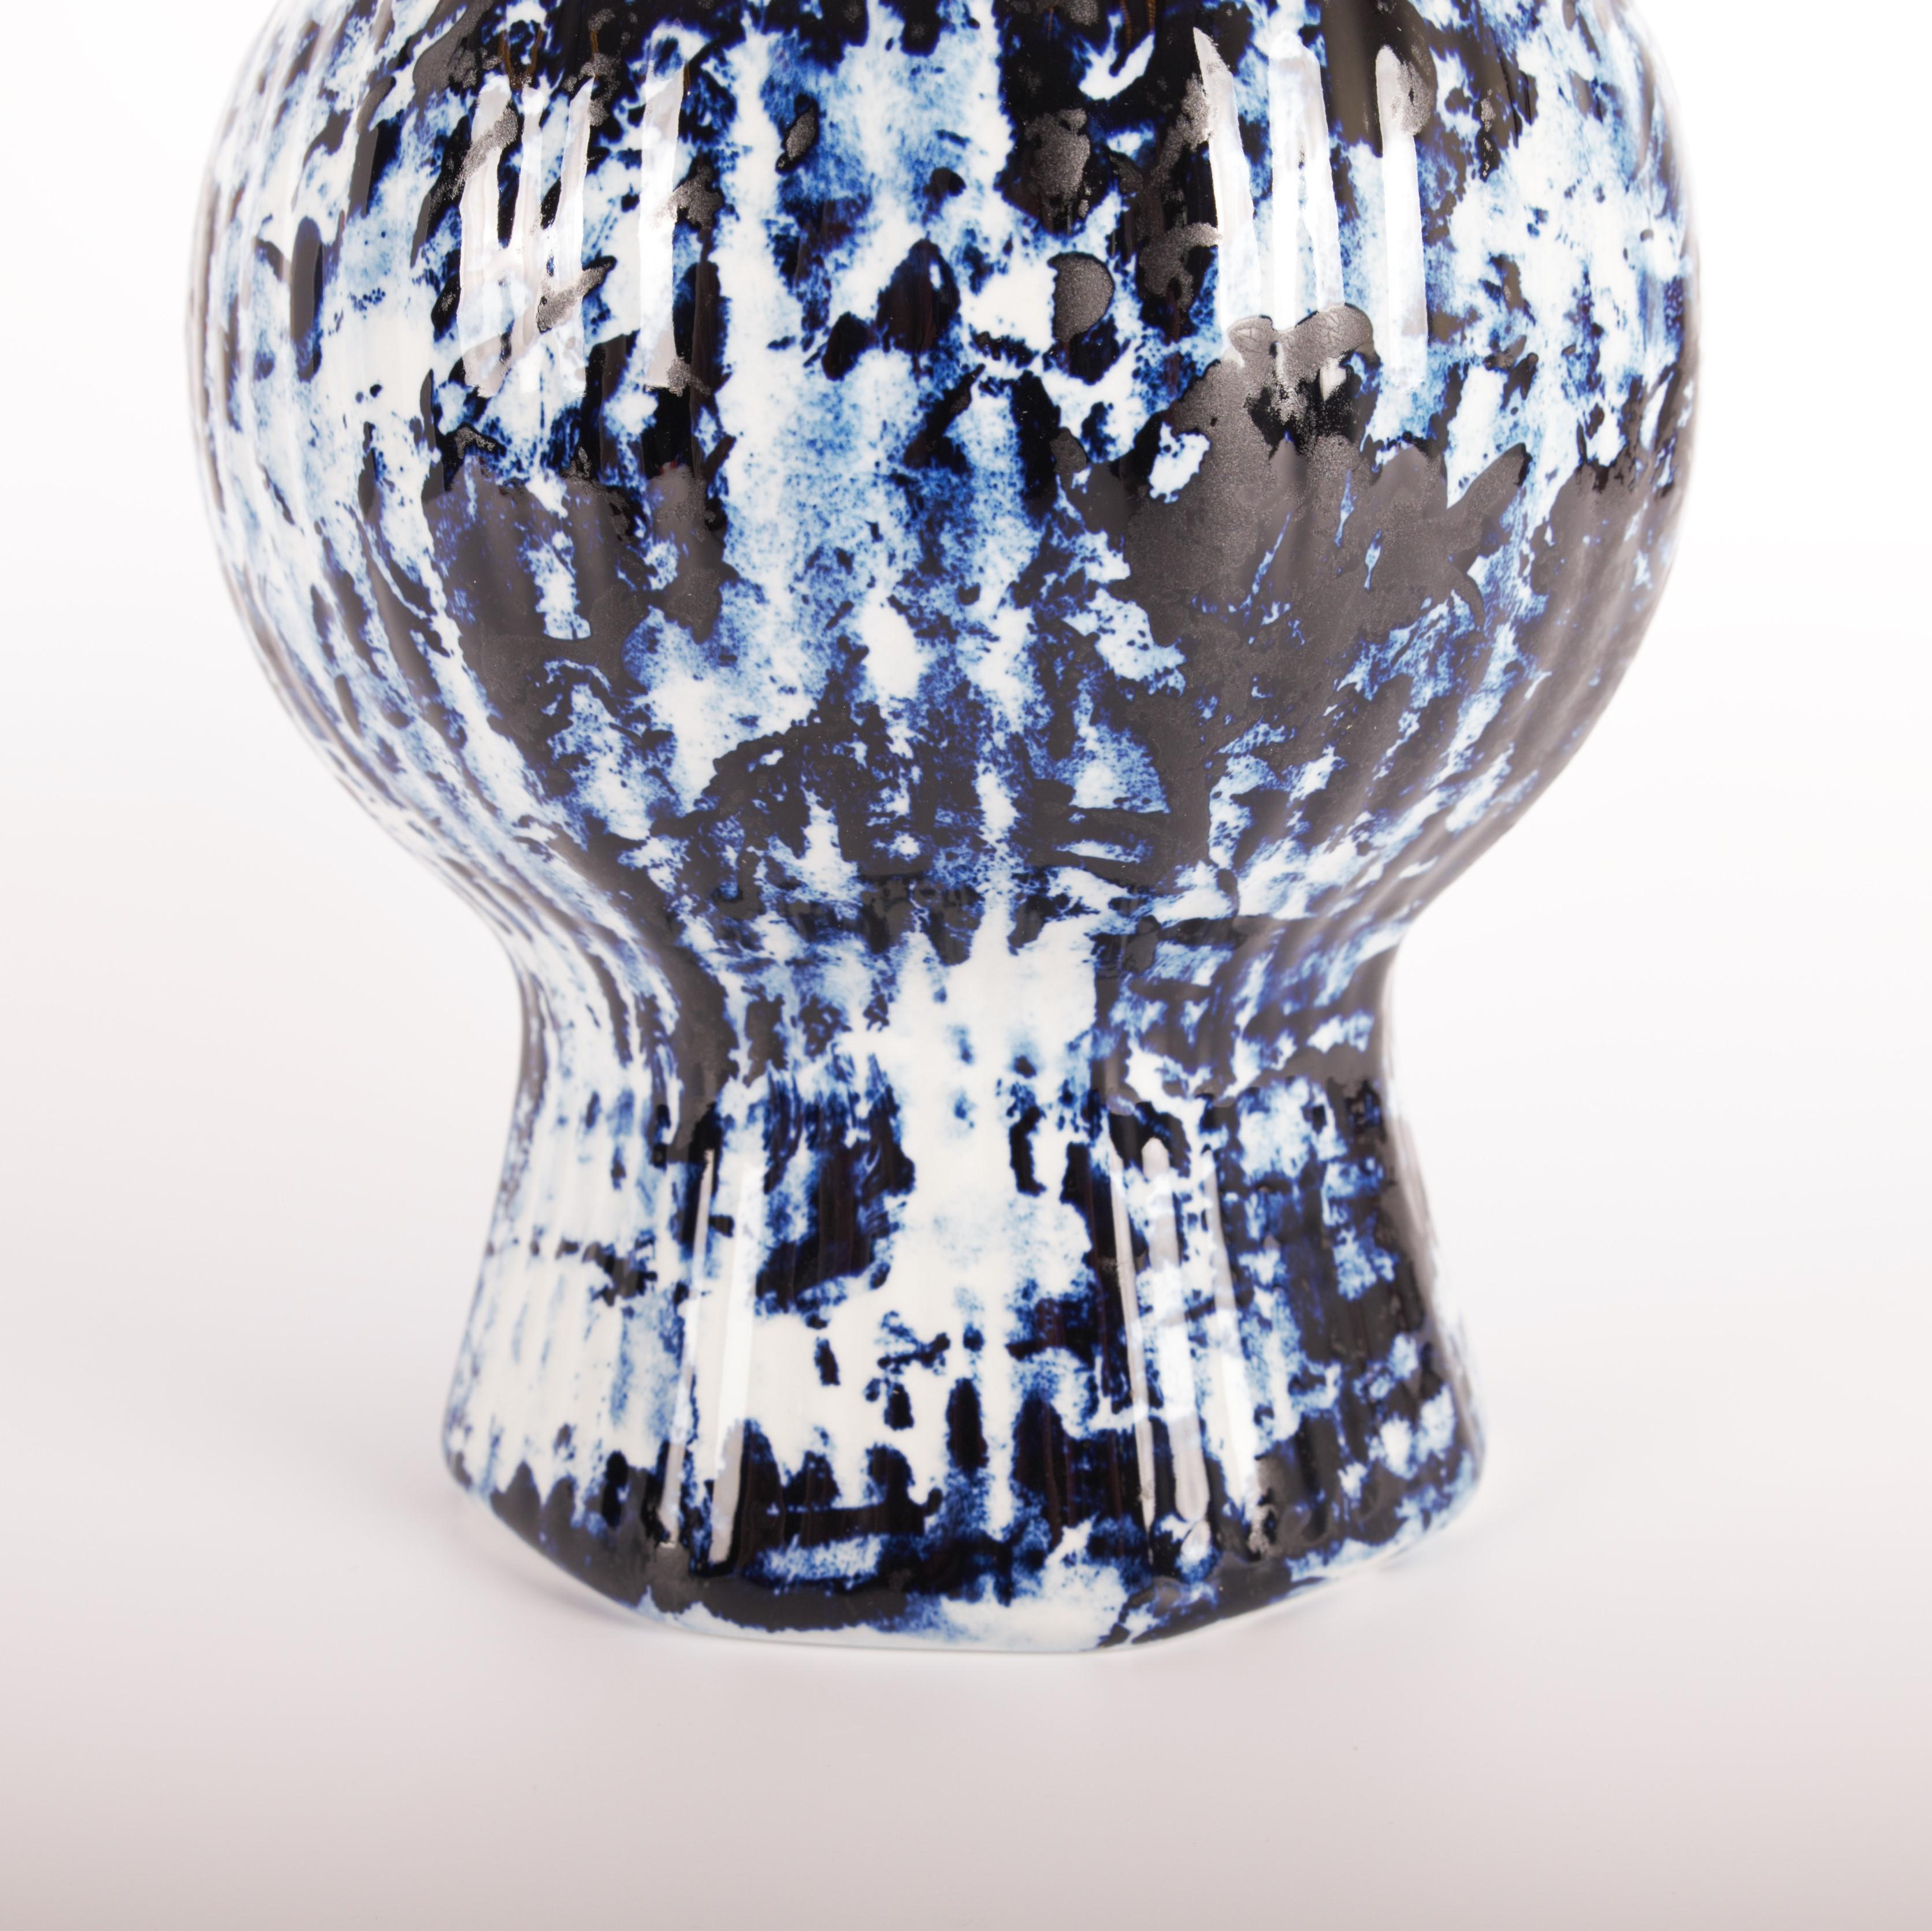 Céramique Vase bleu de Delft avec couvercle de 37 cm #2, peint à la main, 2006, unique par Marcel Wanders en vente